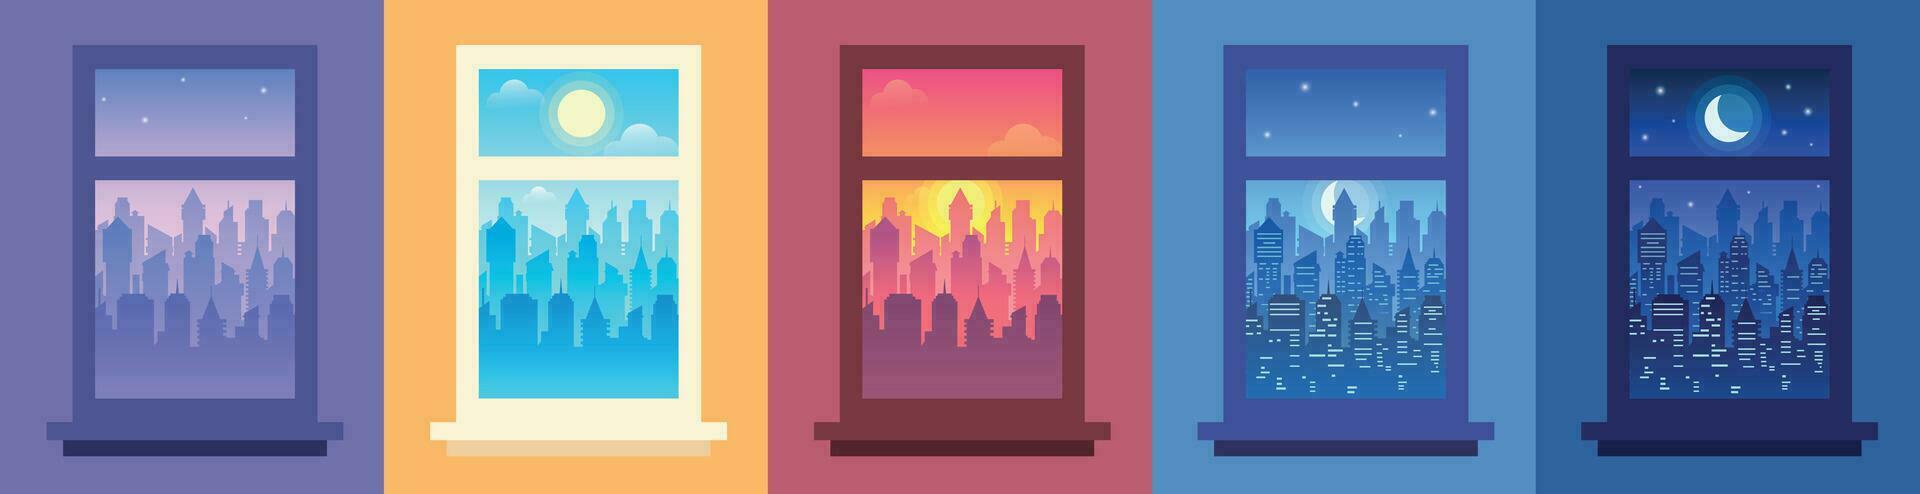 dagtid stad landskap i fönster. förändra av tid av dag, natt stad se från fönster och stadsbild i ram vektor illustration uppsättning